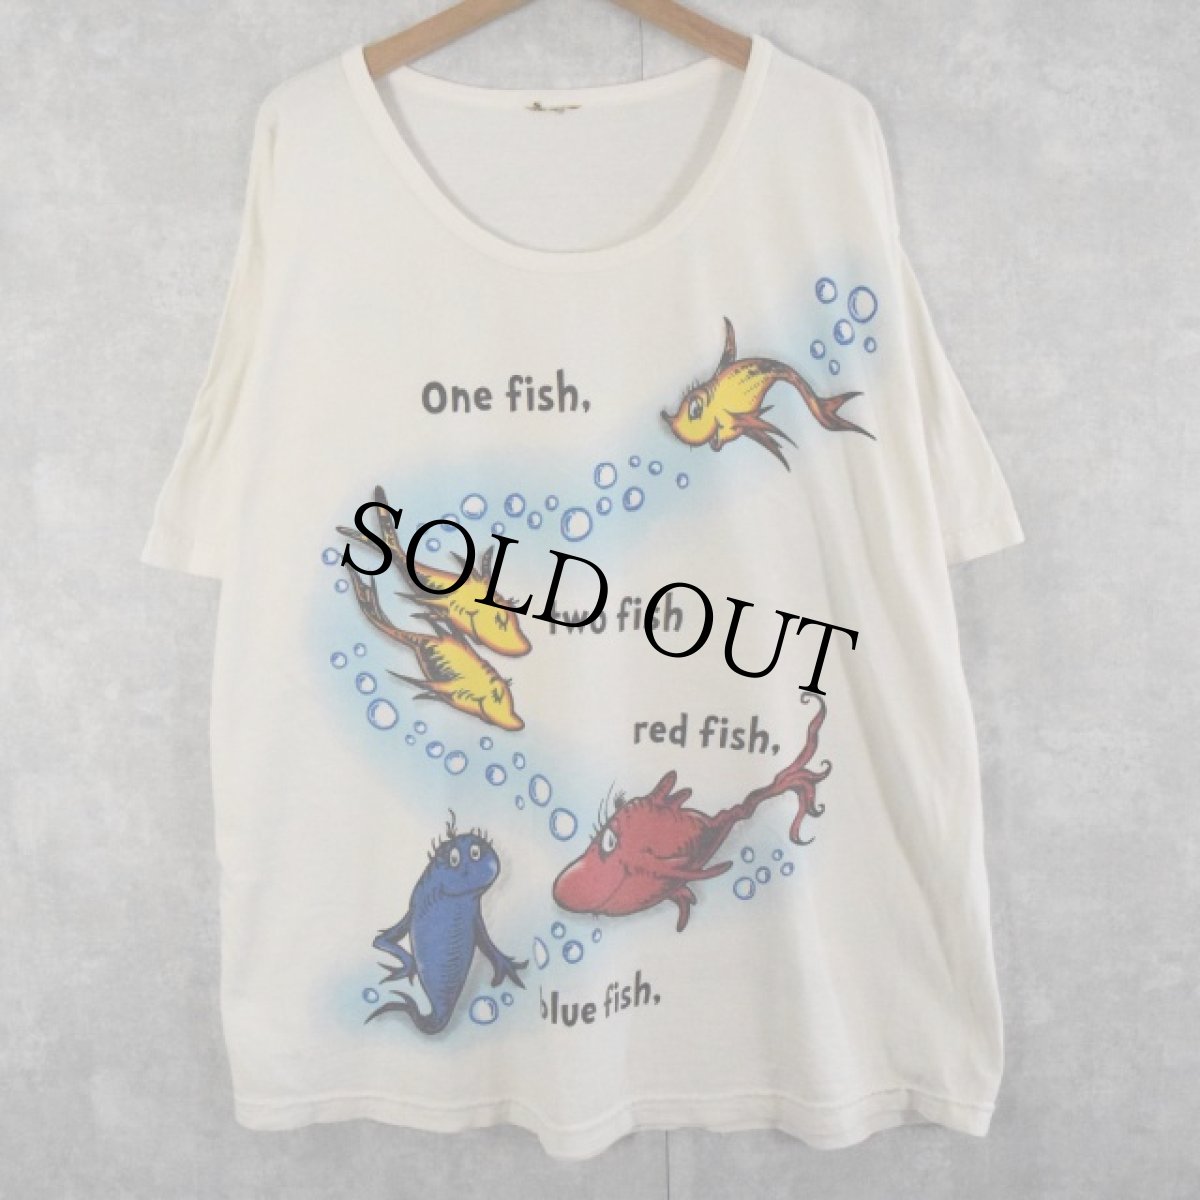 画像1: Dr. Seuss "One fish, two fish, red fish, blue fish" キャラクターTシャツ  (1)